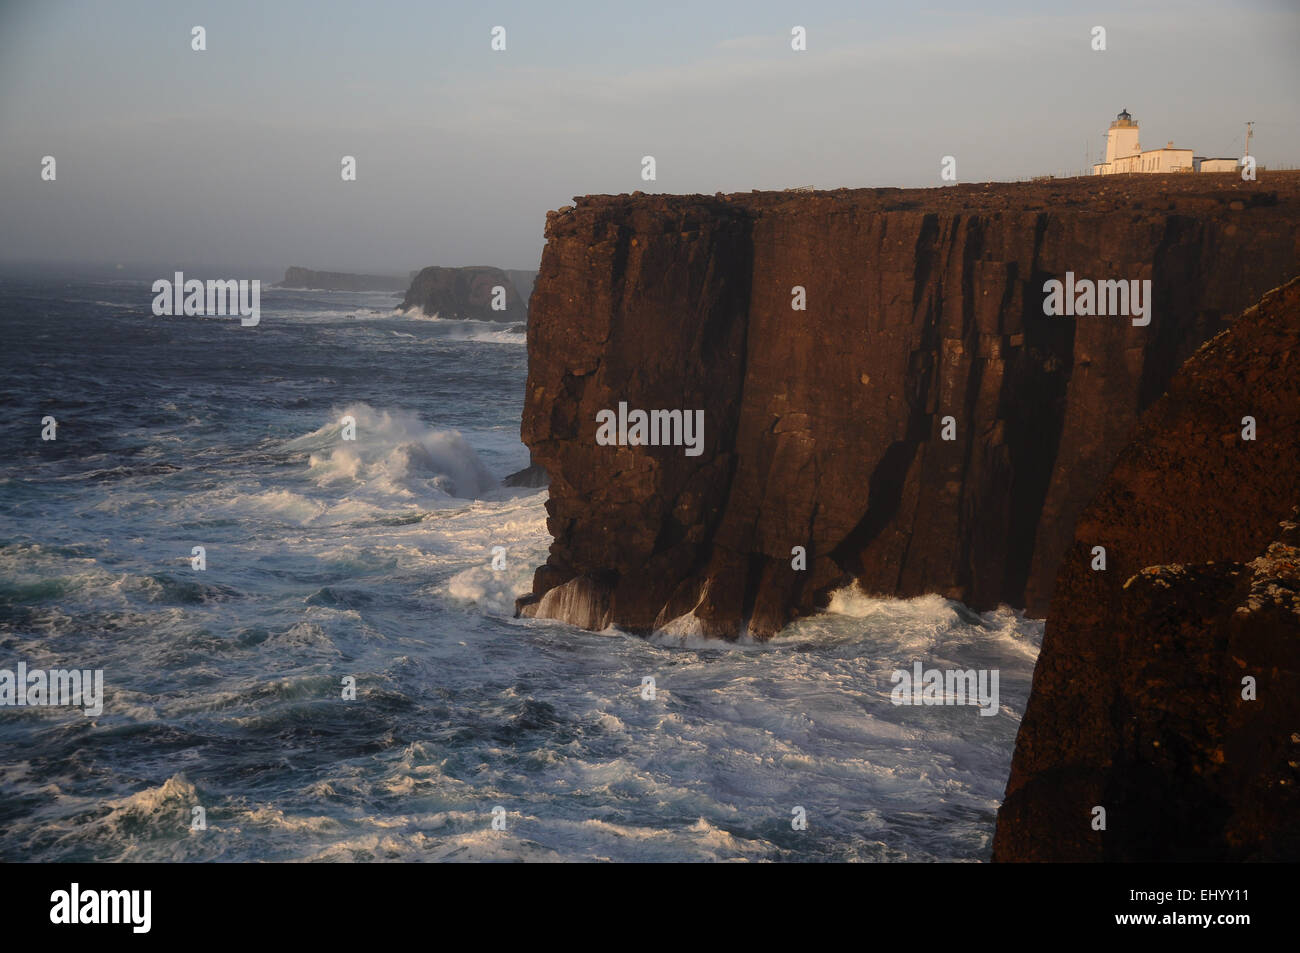 La Scozia, isole Shetland, eshaness, continentale, west coast, Atlantico, rocce, mare, FARO, Gran Bretagna, Europa Foto Stock